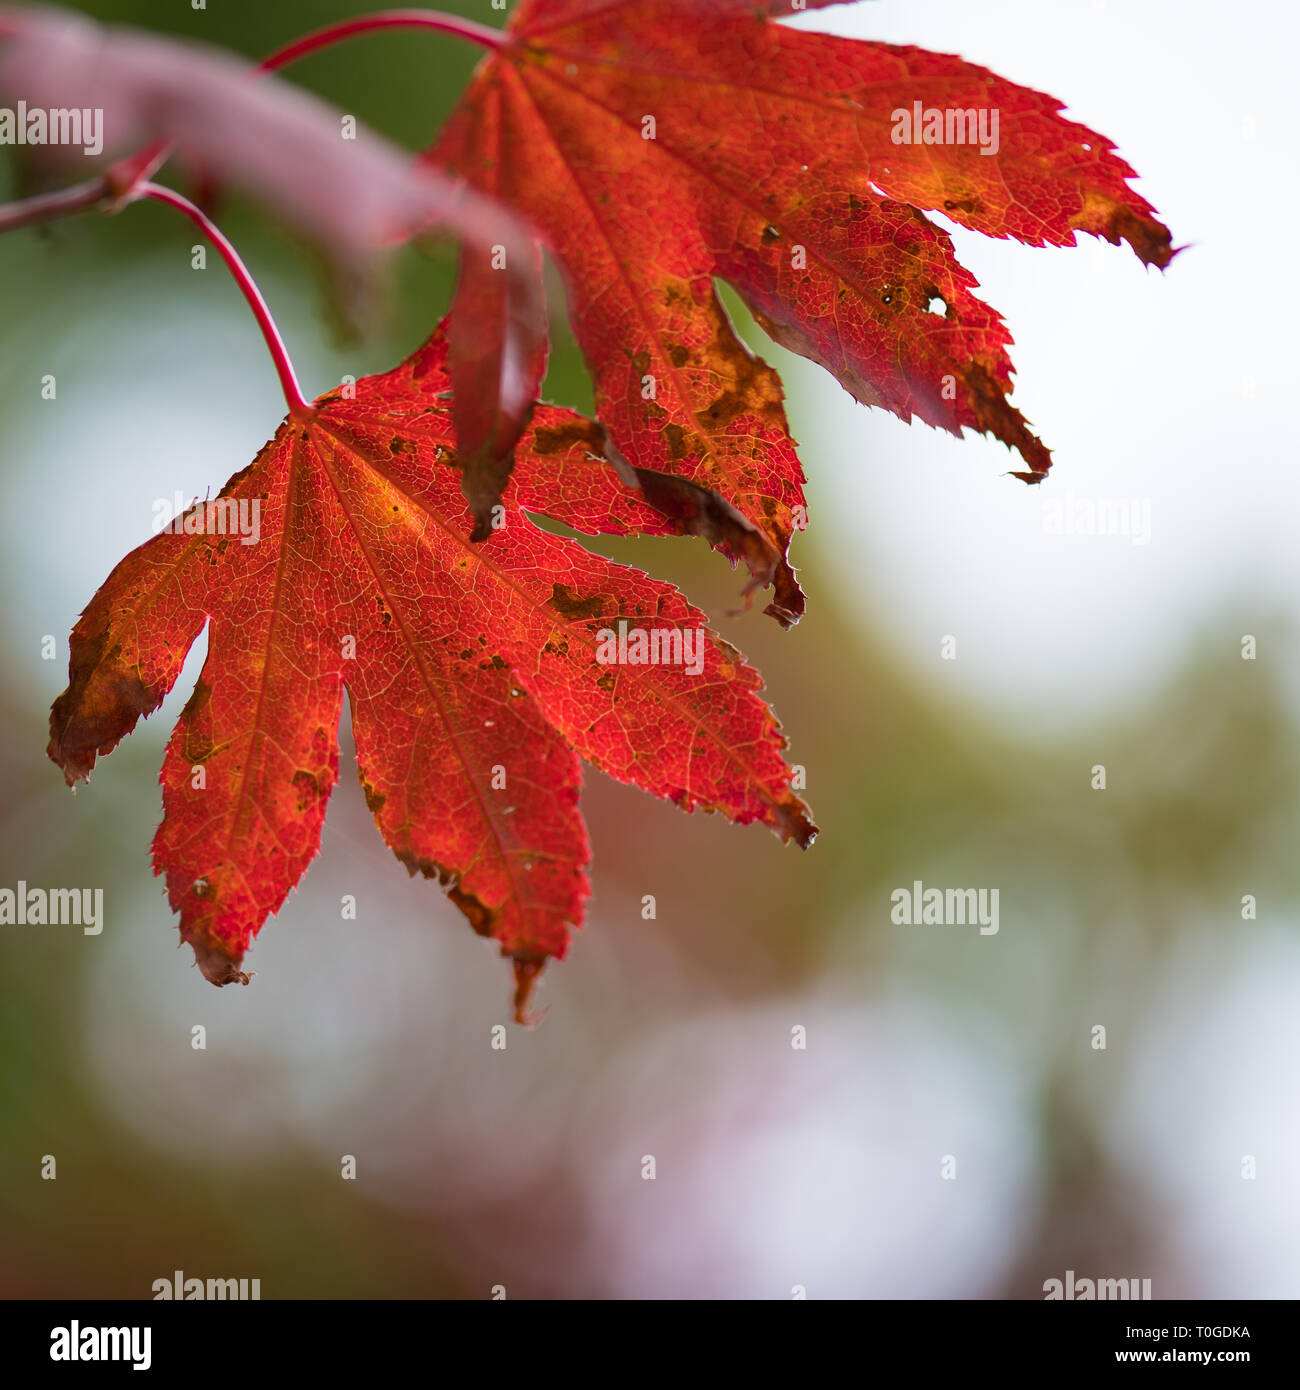 Japanese maple / acer autumn foliage photographed at Wakehurst Wild Botanic Gardens in England Stock Photo